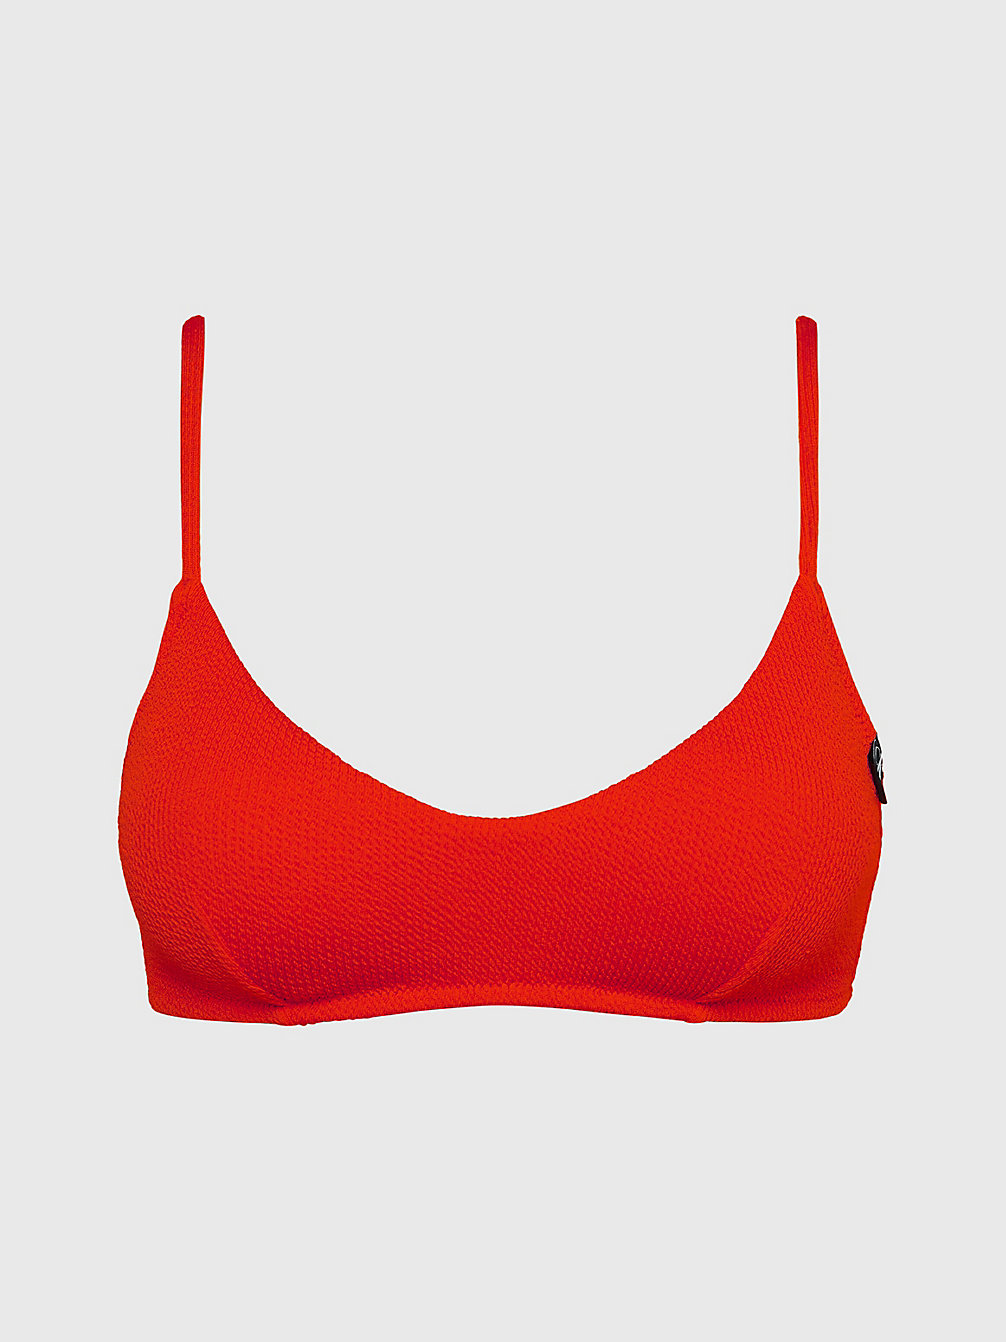 CAJUN RED Bralette Bikinitop - CK Texture undefined dames Calvin Klein